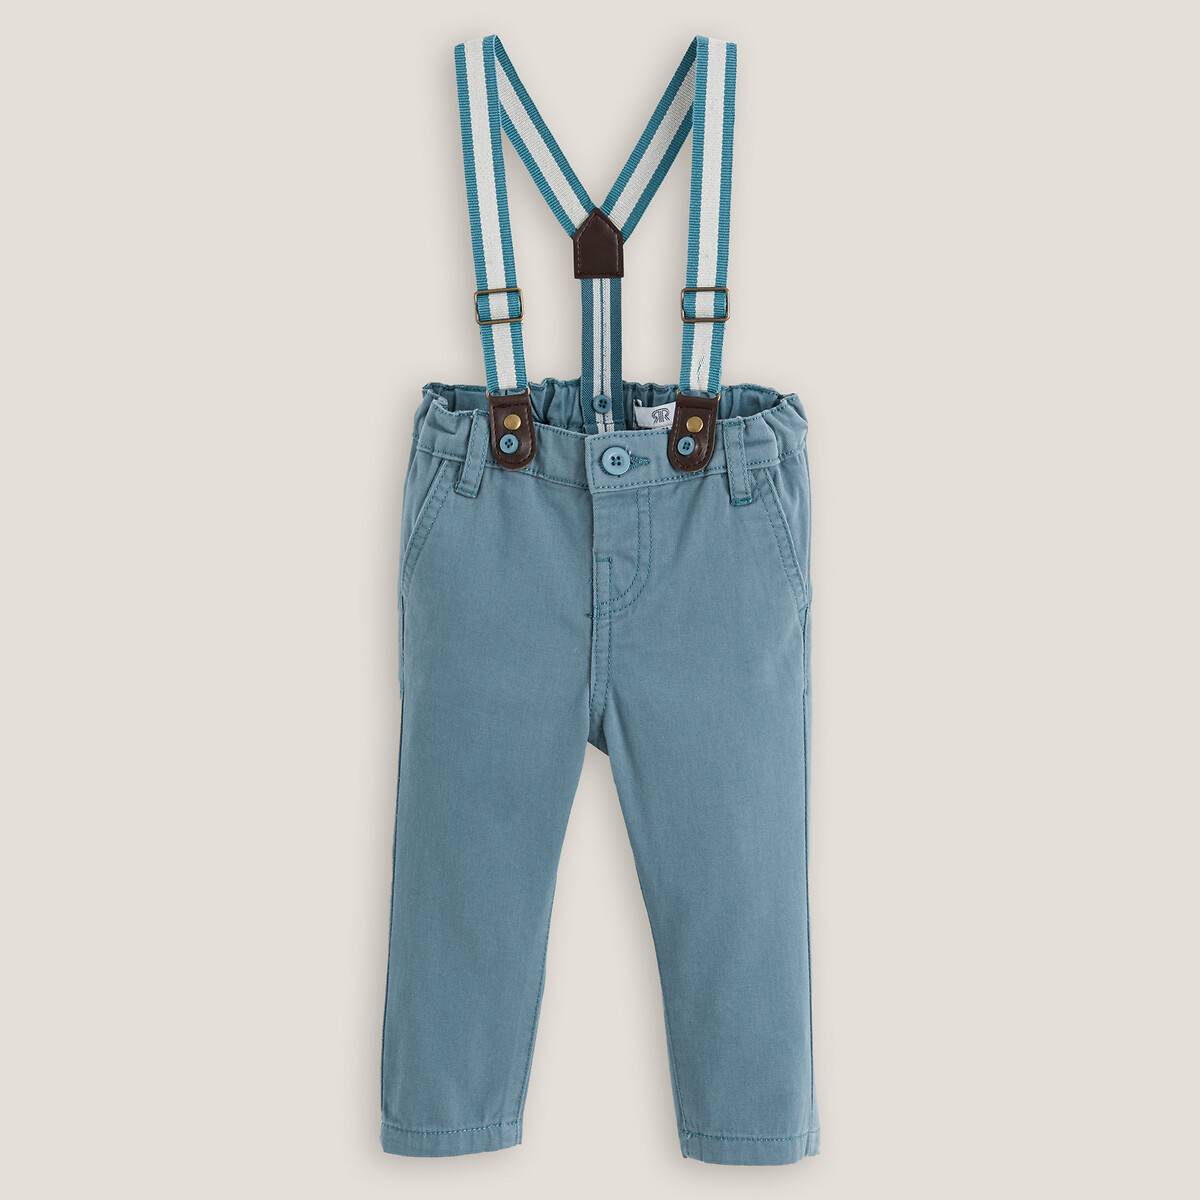 Комплект из двух вещей рубашка LA REDOUTE COLLECTIONS брюки на лямках 4 года - 102 см бежевый, размер 4 года - 102 см - фото 2